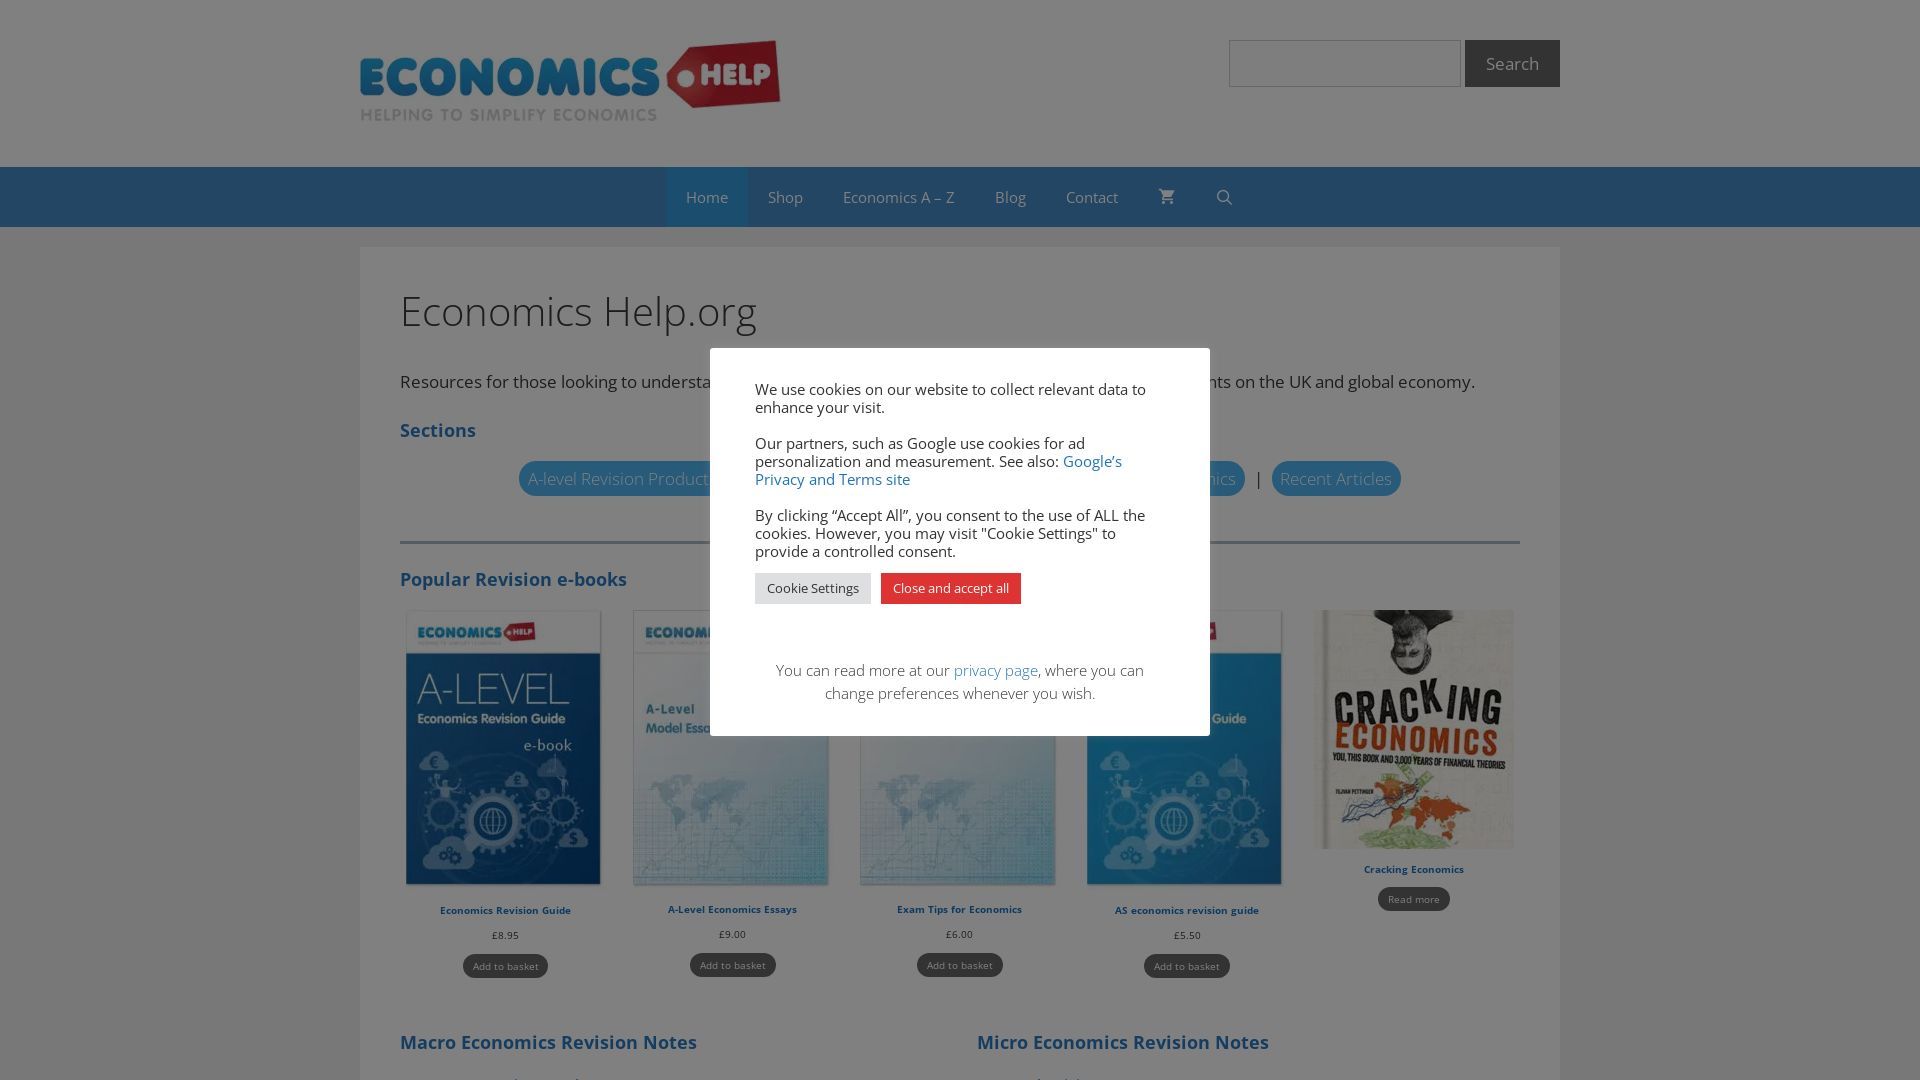 Website status economicshelp.org is   ONLINE